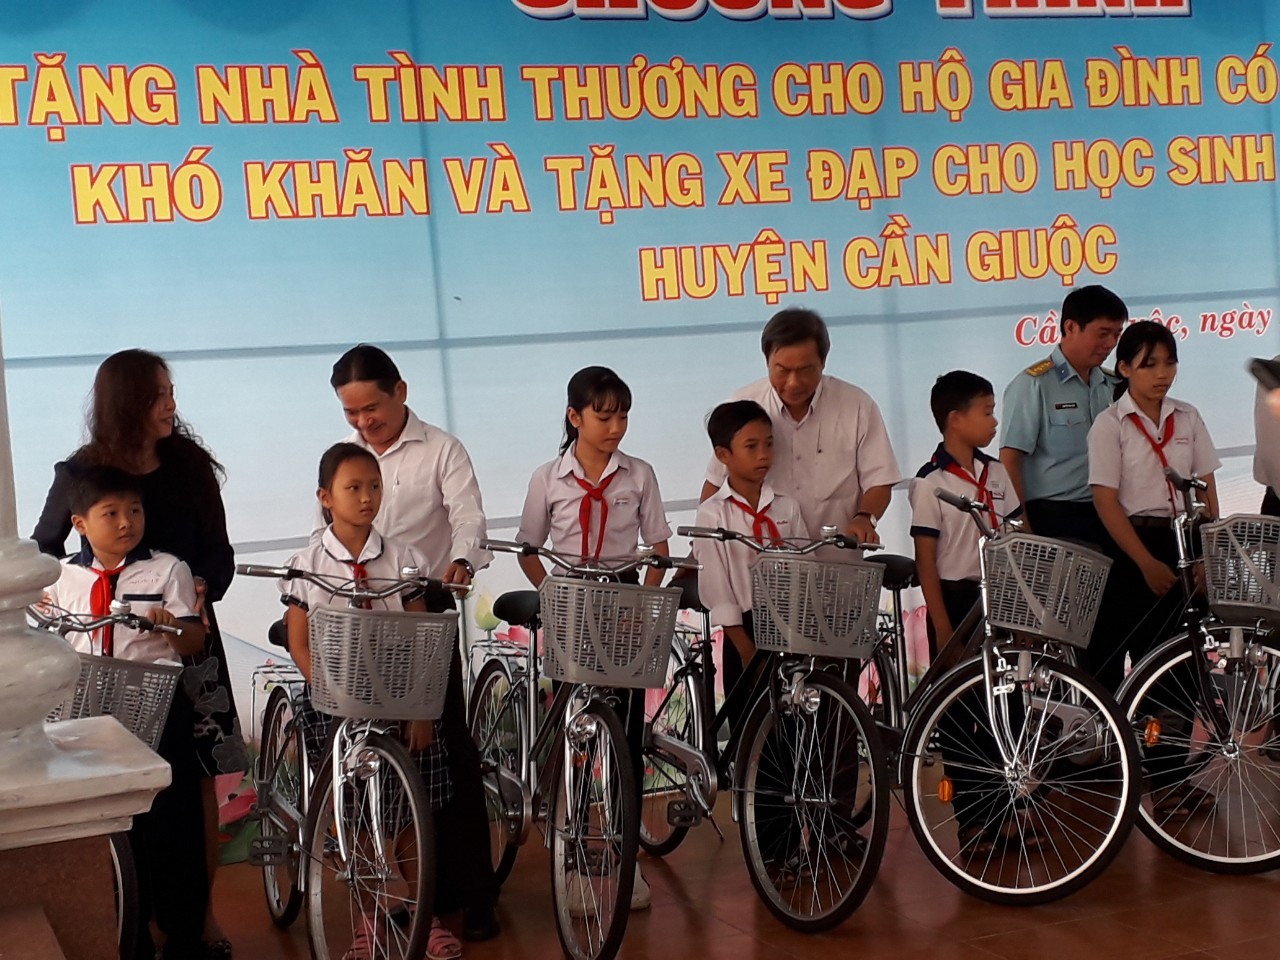 Chương trình tặng nhà tình thương cho hộ gia đình có hoàn cảnh khó khăn và tặng xe đạp cho học sinh hiếu học huyện Cần Giuộc